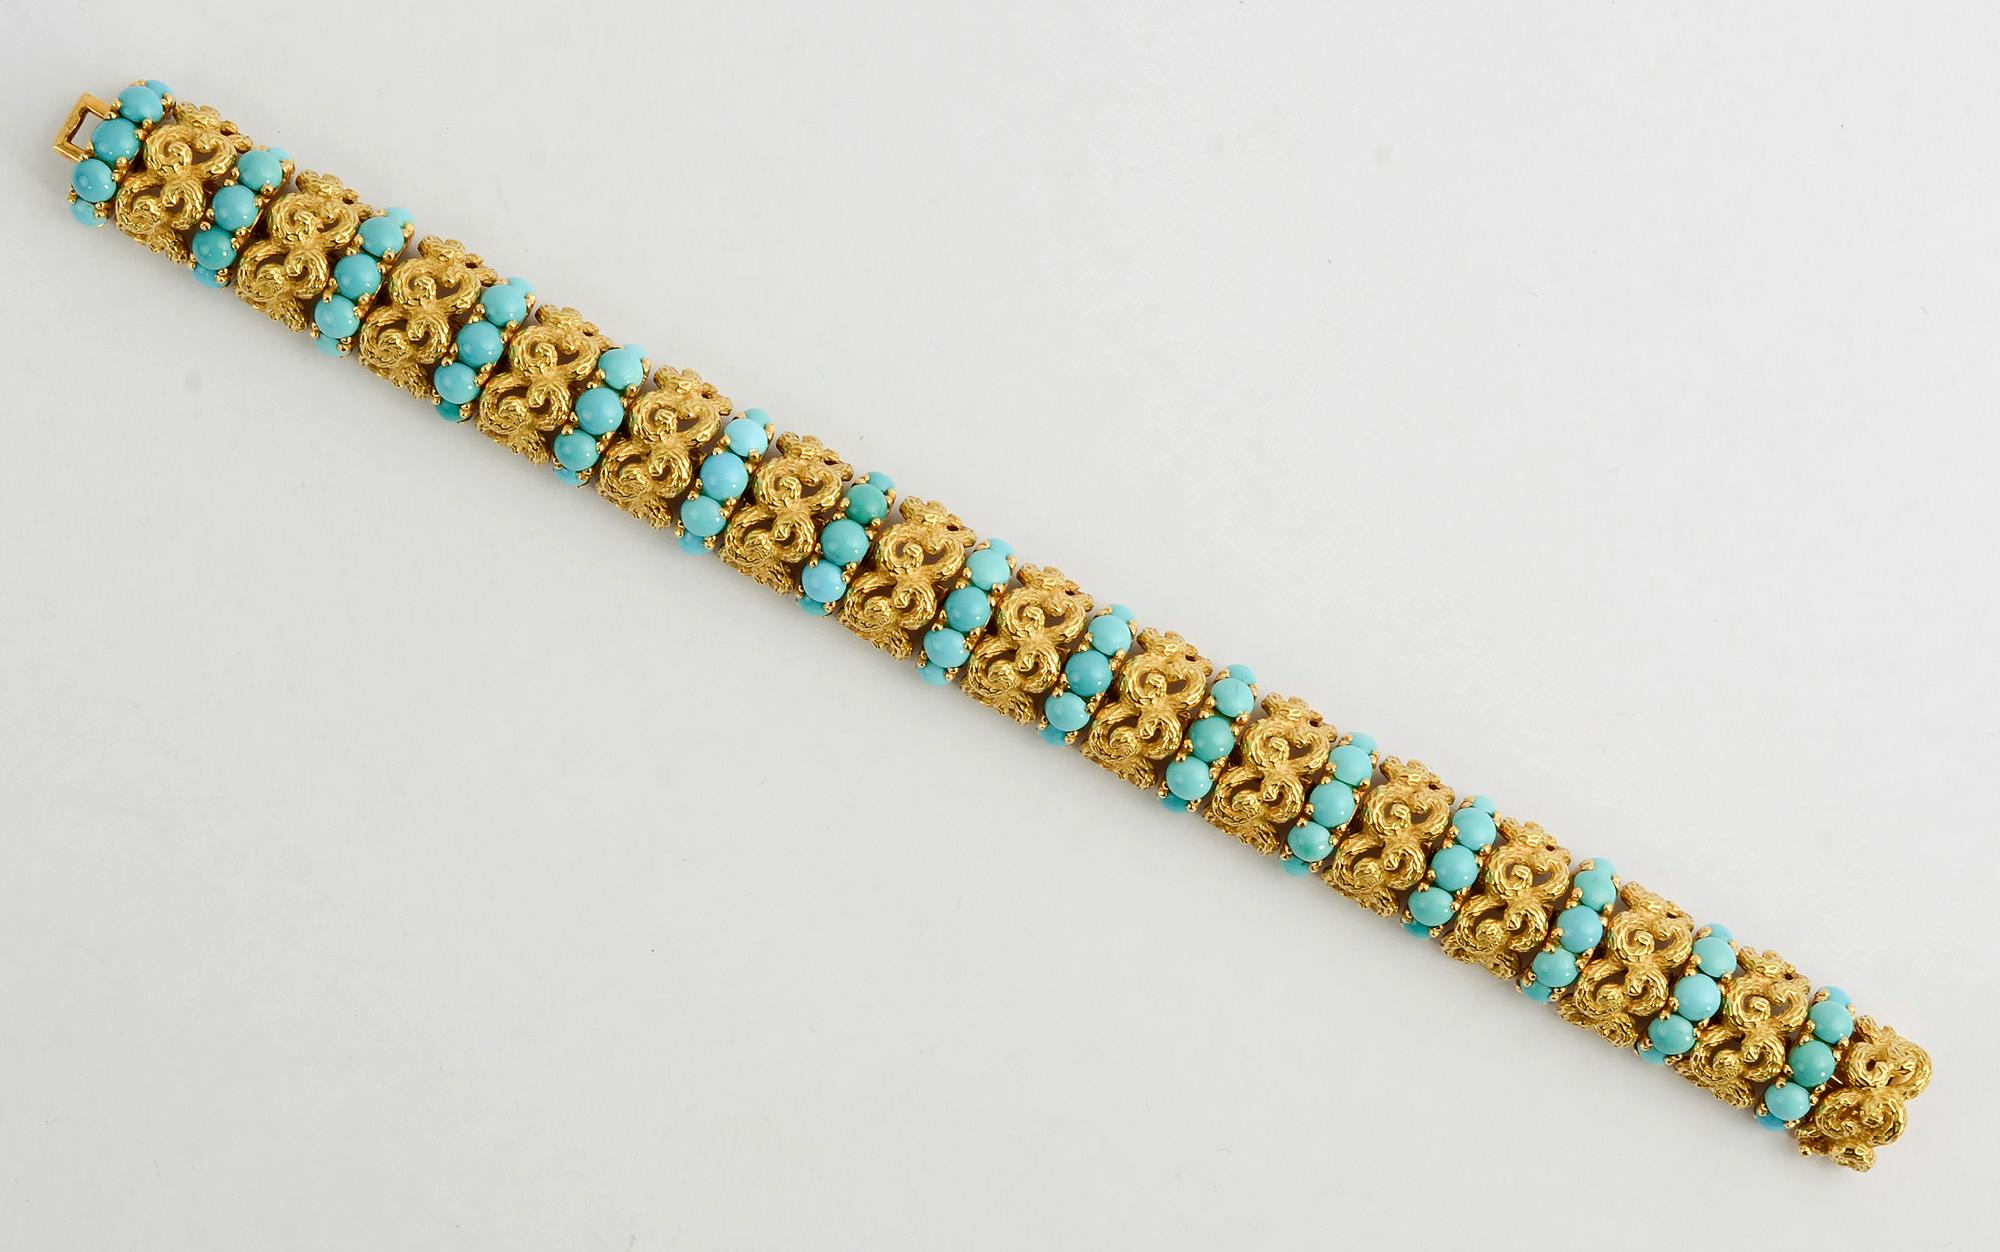 Feines Armband von Pomellato aus kunstvoll verschlungenen, strukturierten Gliedern. Jede Gruppe von Goldgliedern ist durch eine Reihe von fünf wunderschön gefärbten Naturtürkisen getrennt. Das Armband hat einen anmutigen Bogen. Es ist 7 3/8 Zoll